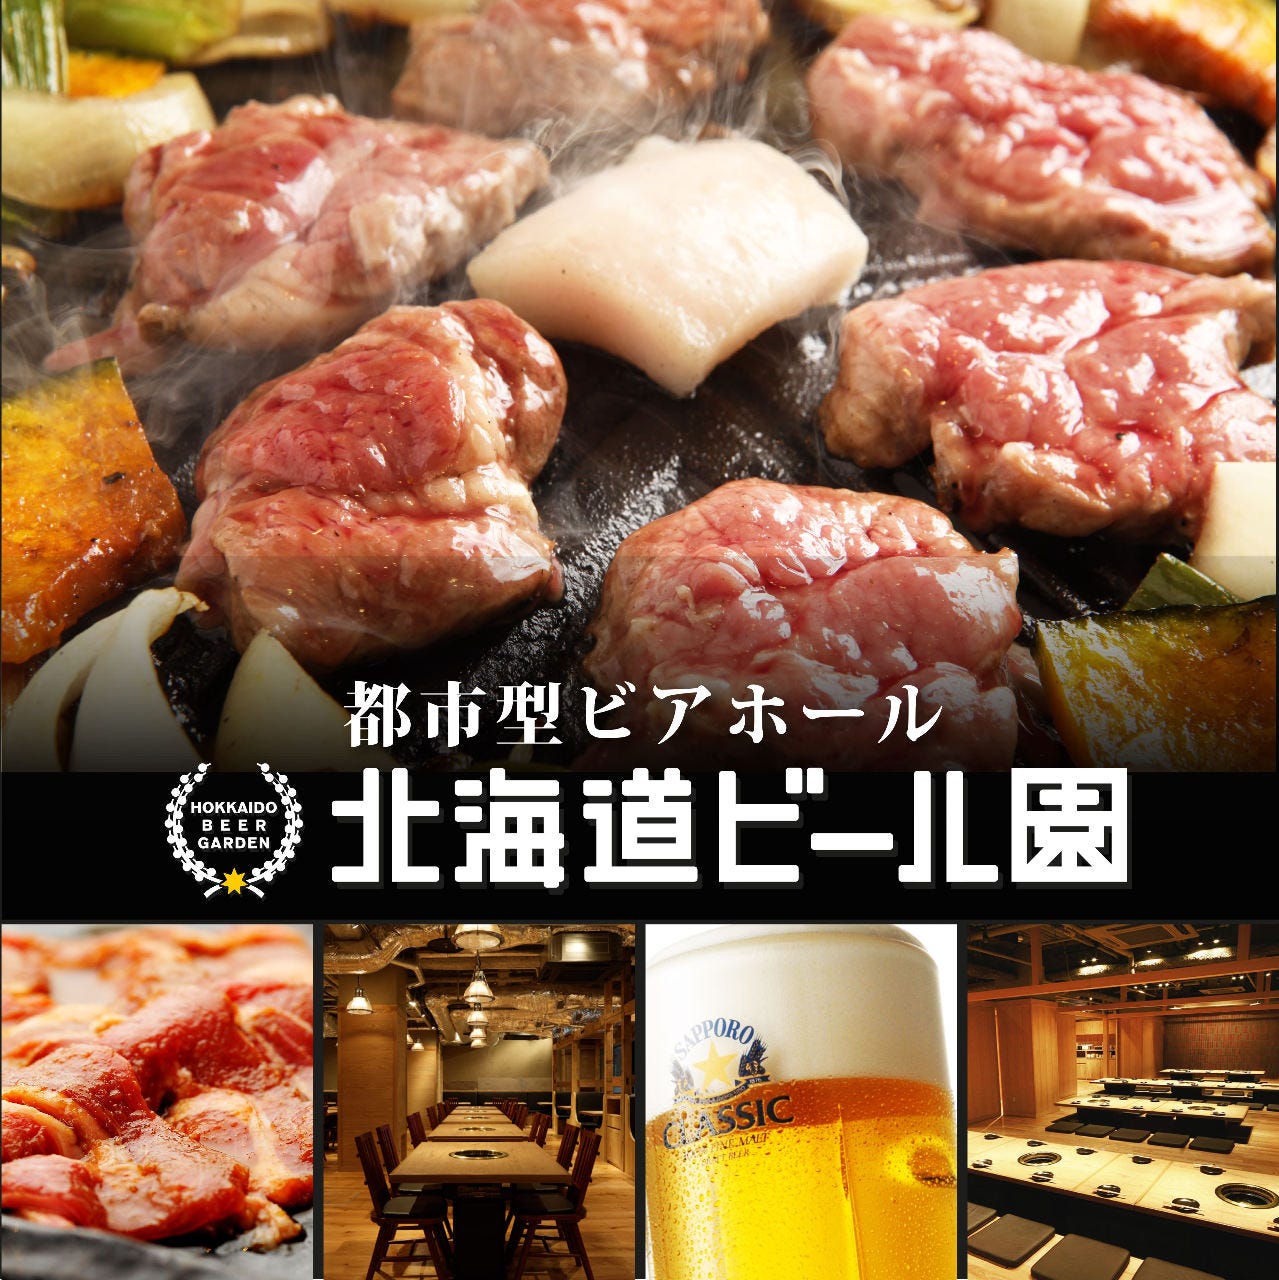 北海道ビール園 HOKKAIDO BEER GARDENのURL1